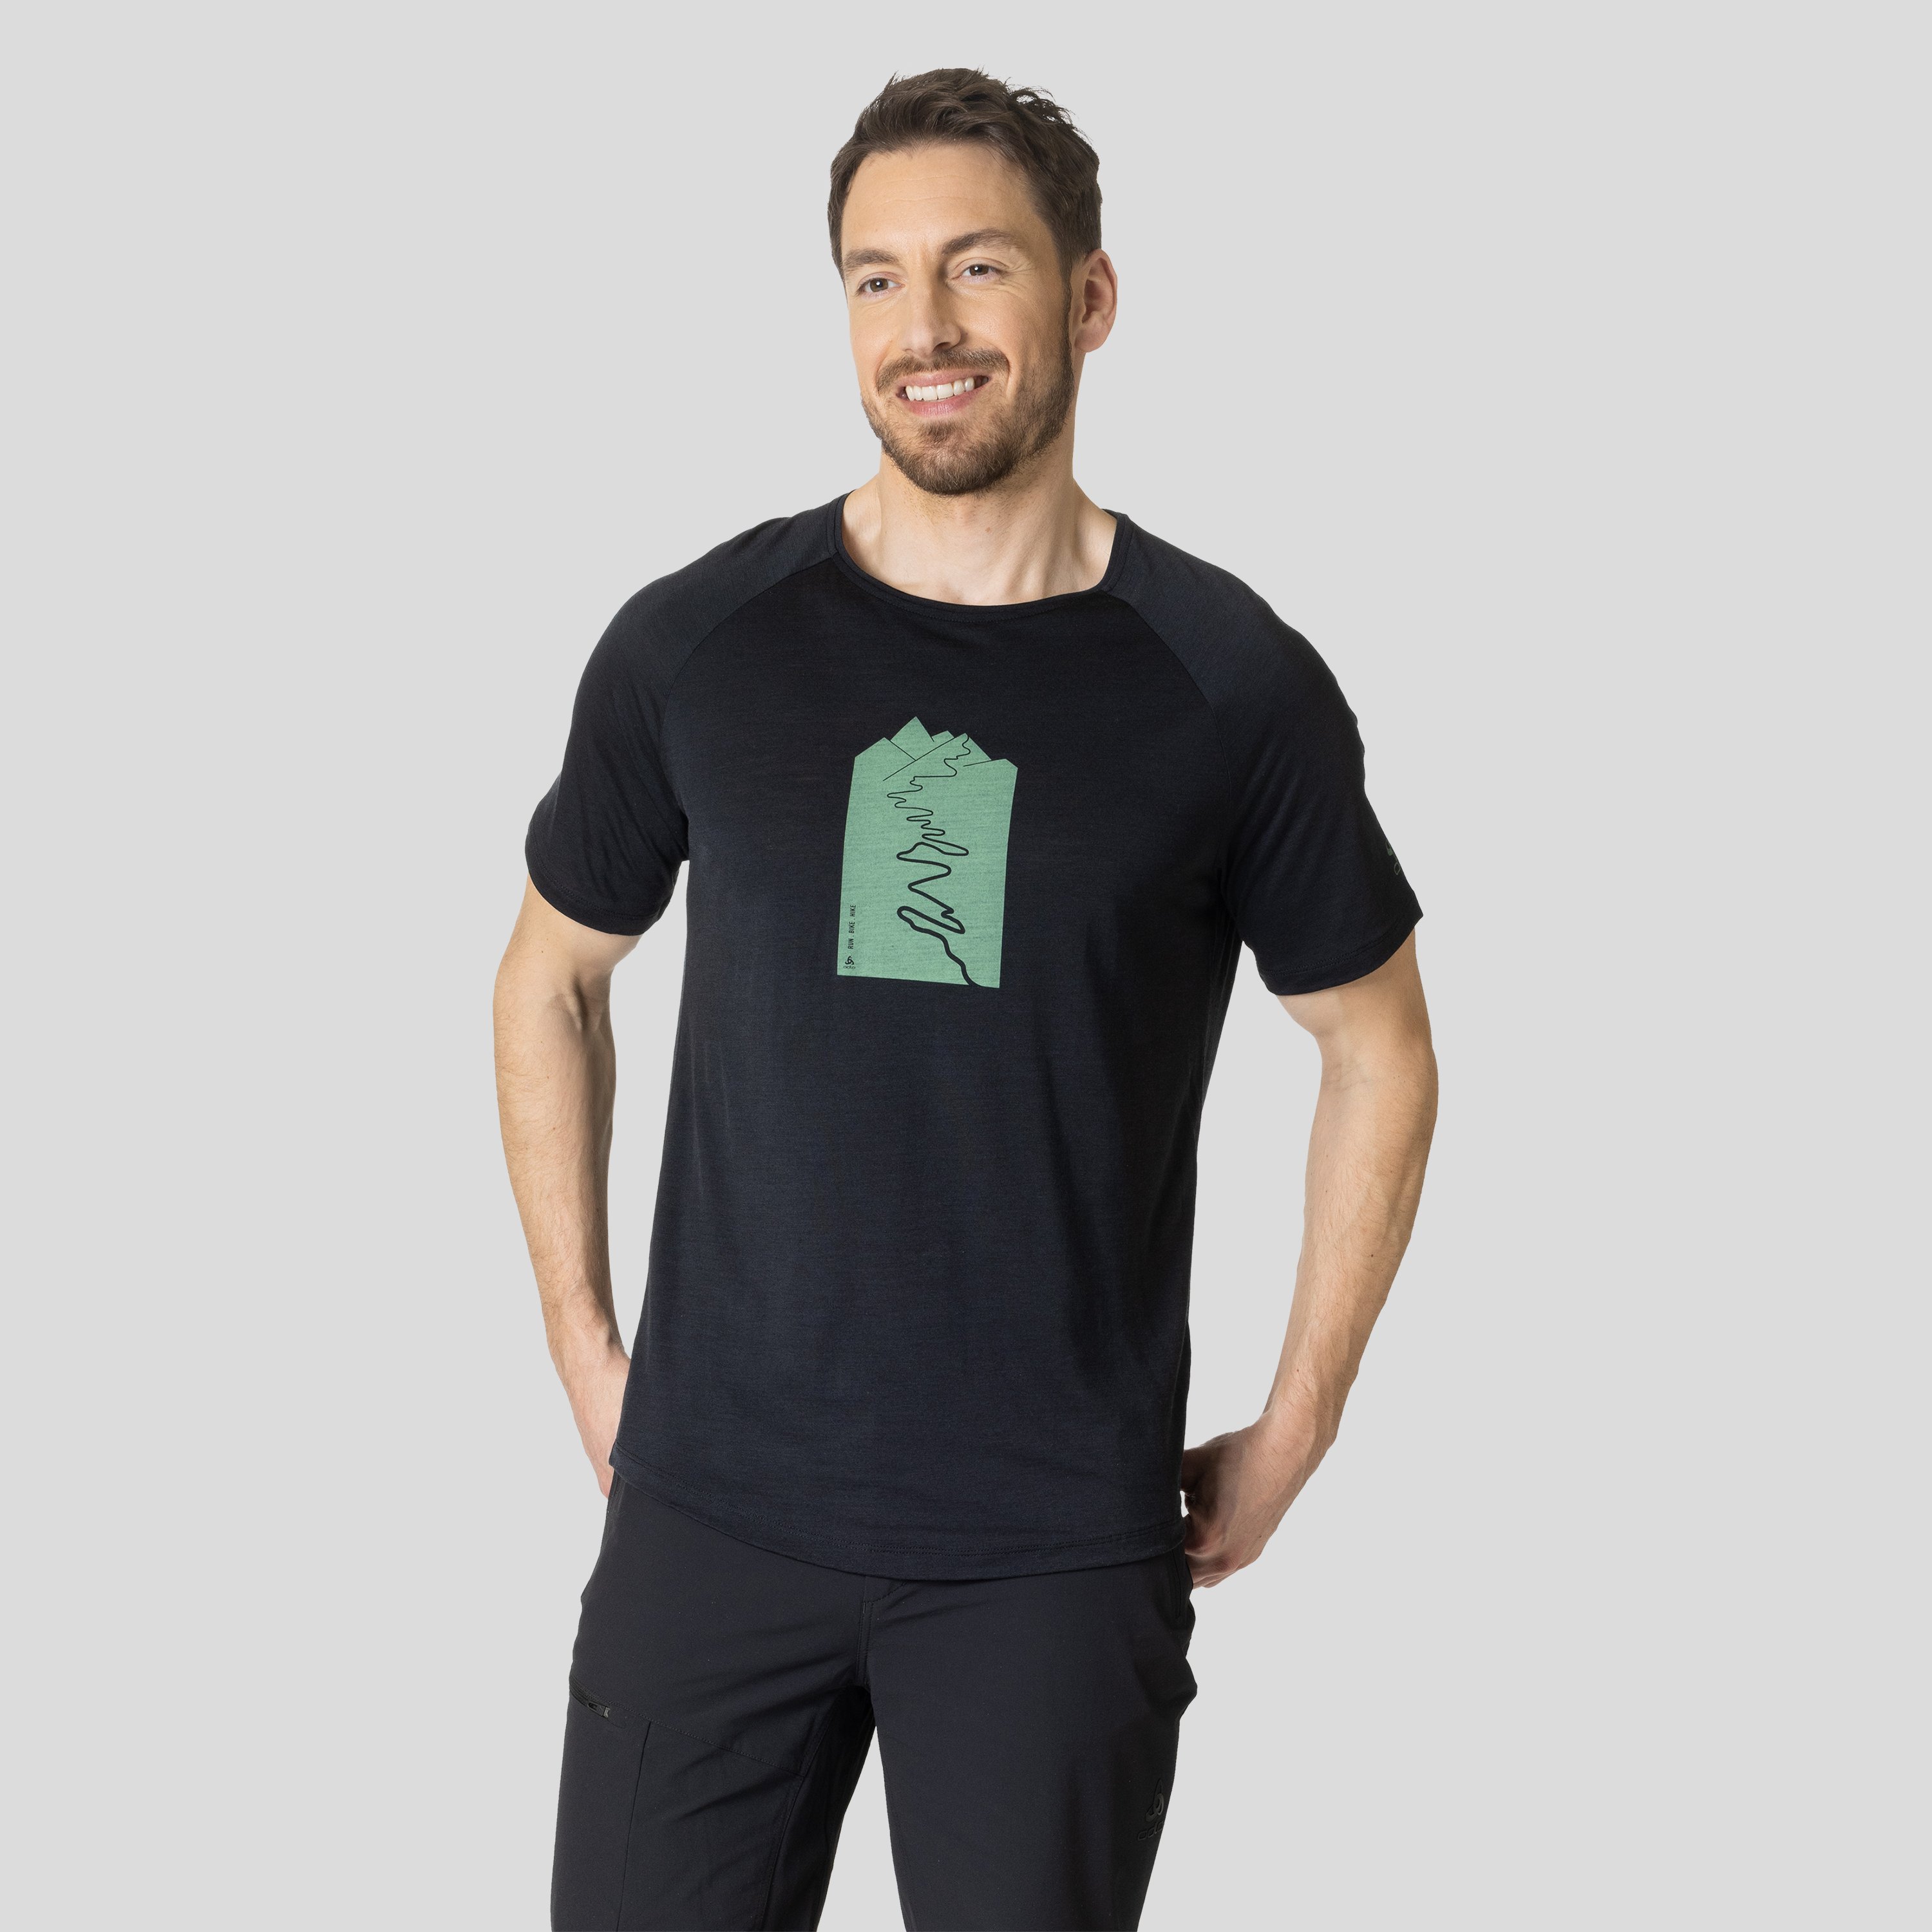 ODLO Ascent Performance Wool 130 T-Shirt mit Trailprint für Herren, XXL, schwarz